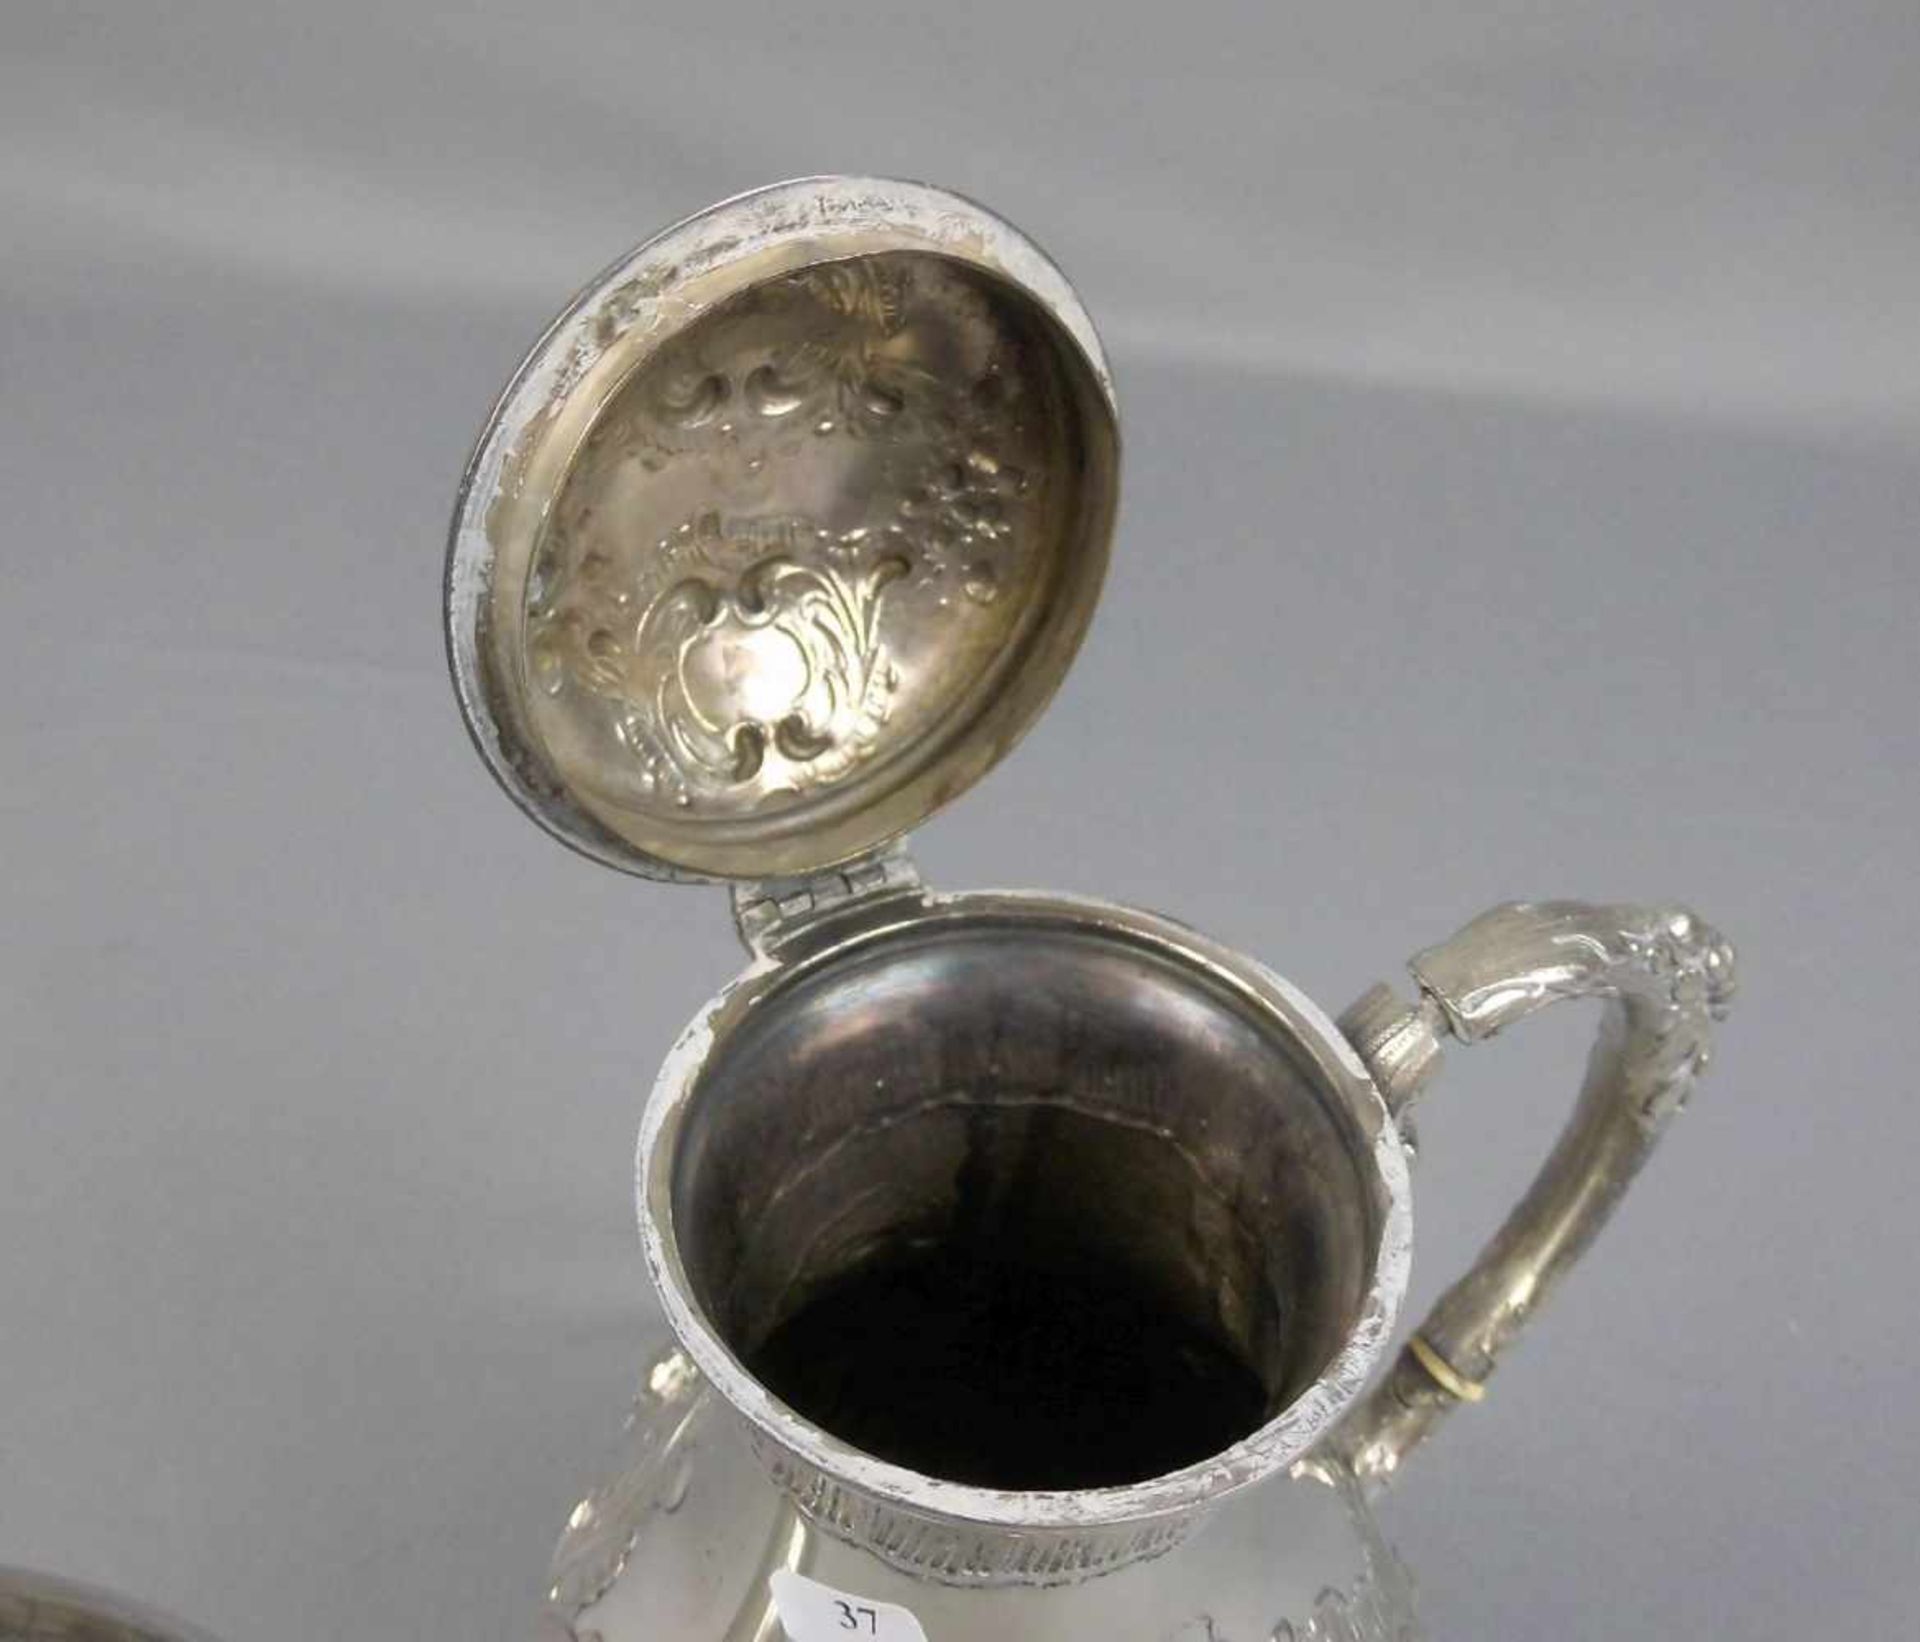 KAFFEEKANNE / silver coffee pot, wohl 19. Jh., 800er Silber (813 g), gepunzt mit Feingehaltsangabe - Bild 5 aus 7